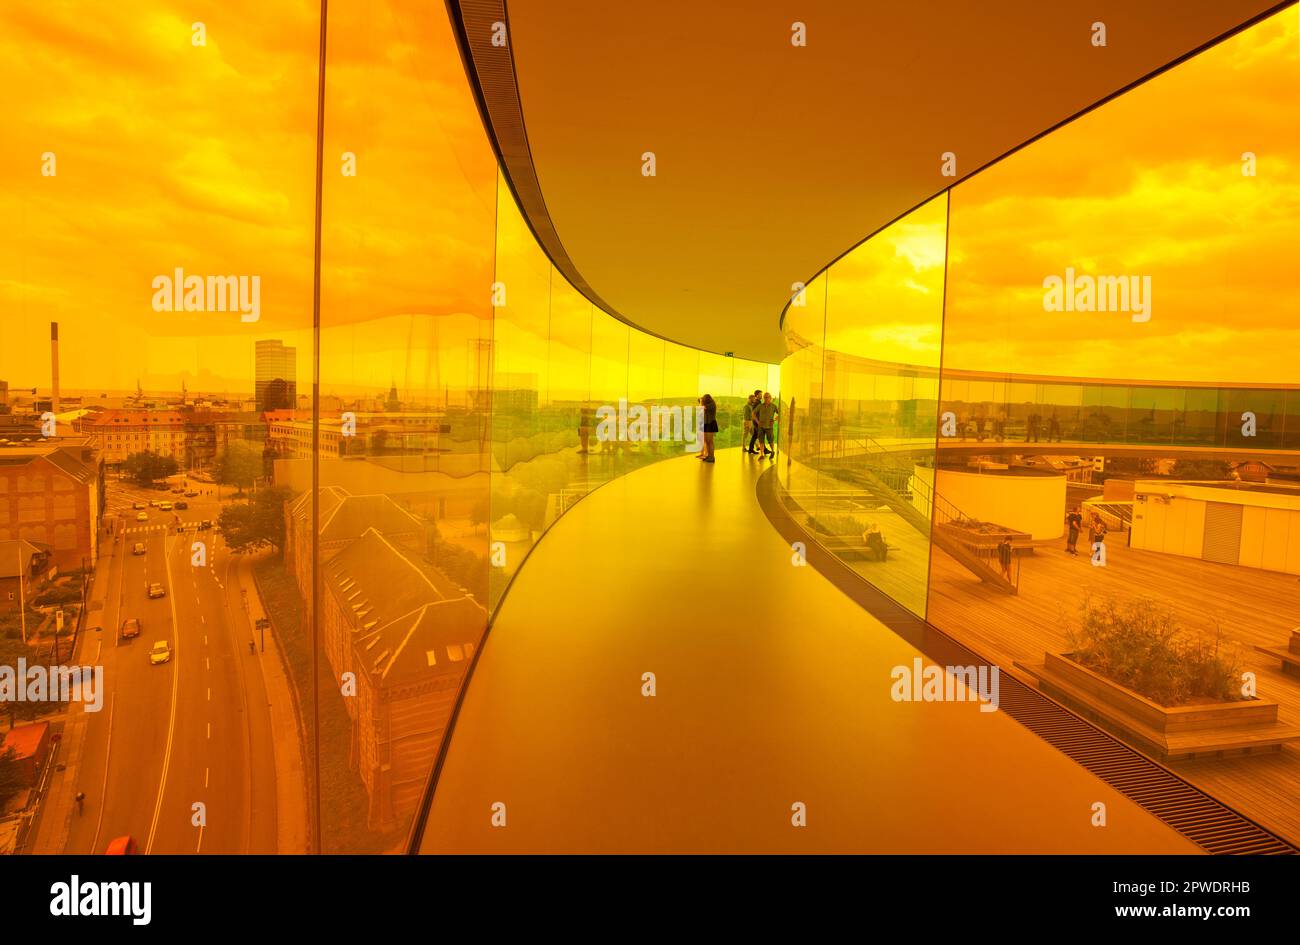 Musée d'art d'Aros Aarhus (kunstmuseum) à Aros Alle, centre-ville avec passerelle arc-en-ciel par Olafur Eliasson - silhouette des gens, Aarhus Danemark. Banque D'Images